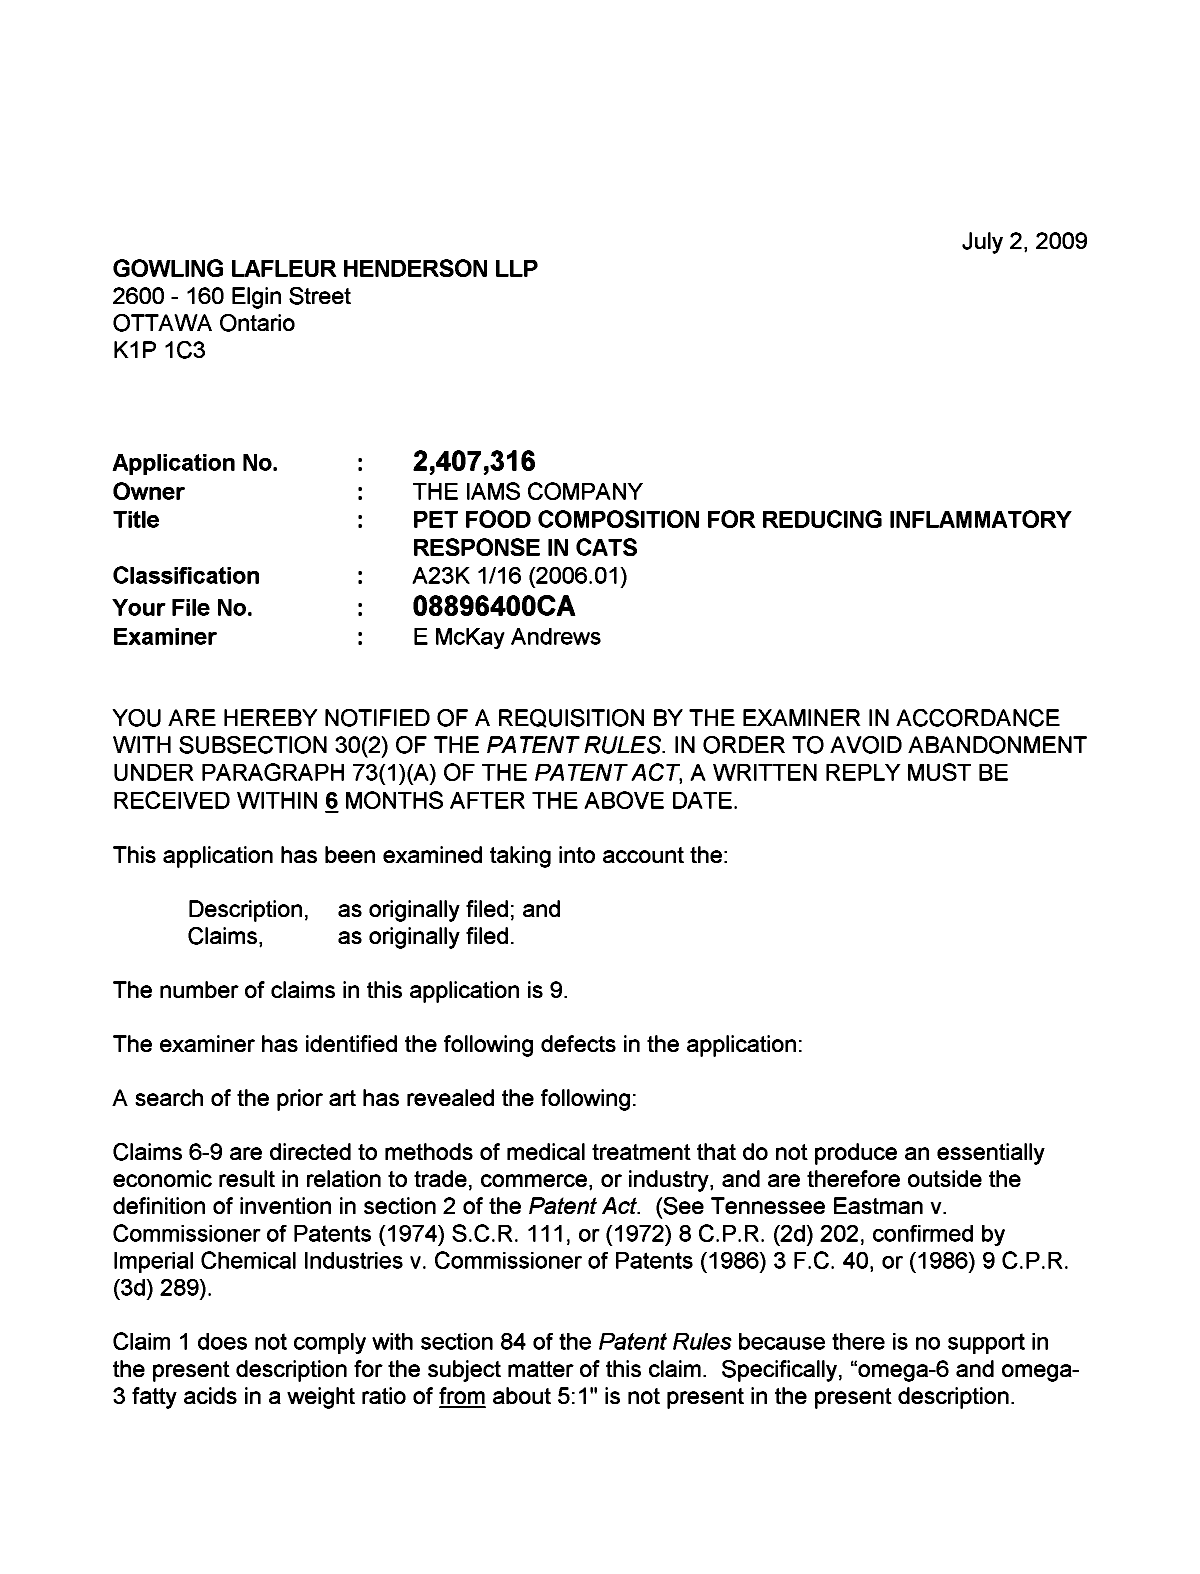 Document de brevet canadien 2407316. Poursuite-Amendment 20090702. Image 1 de 2